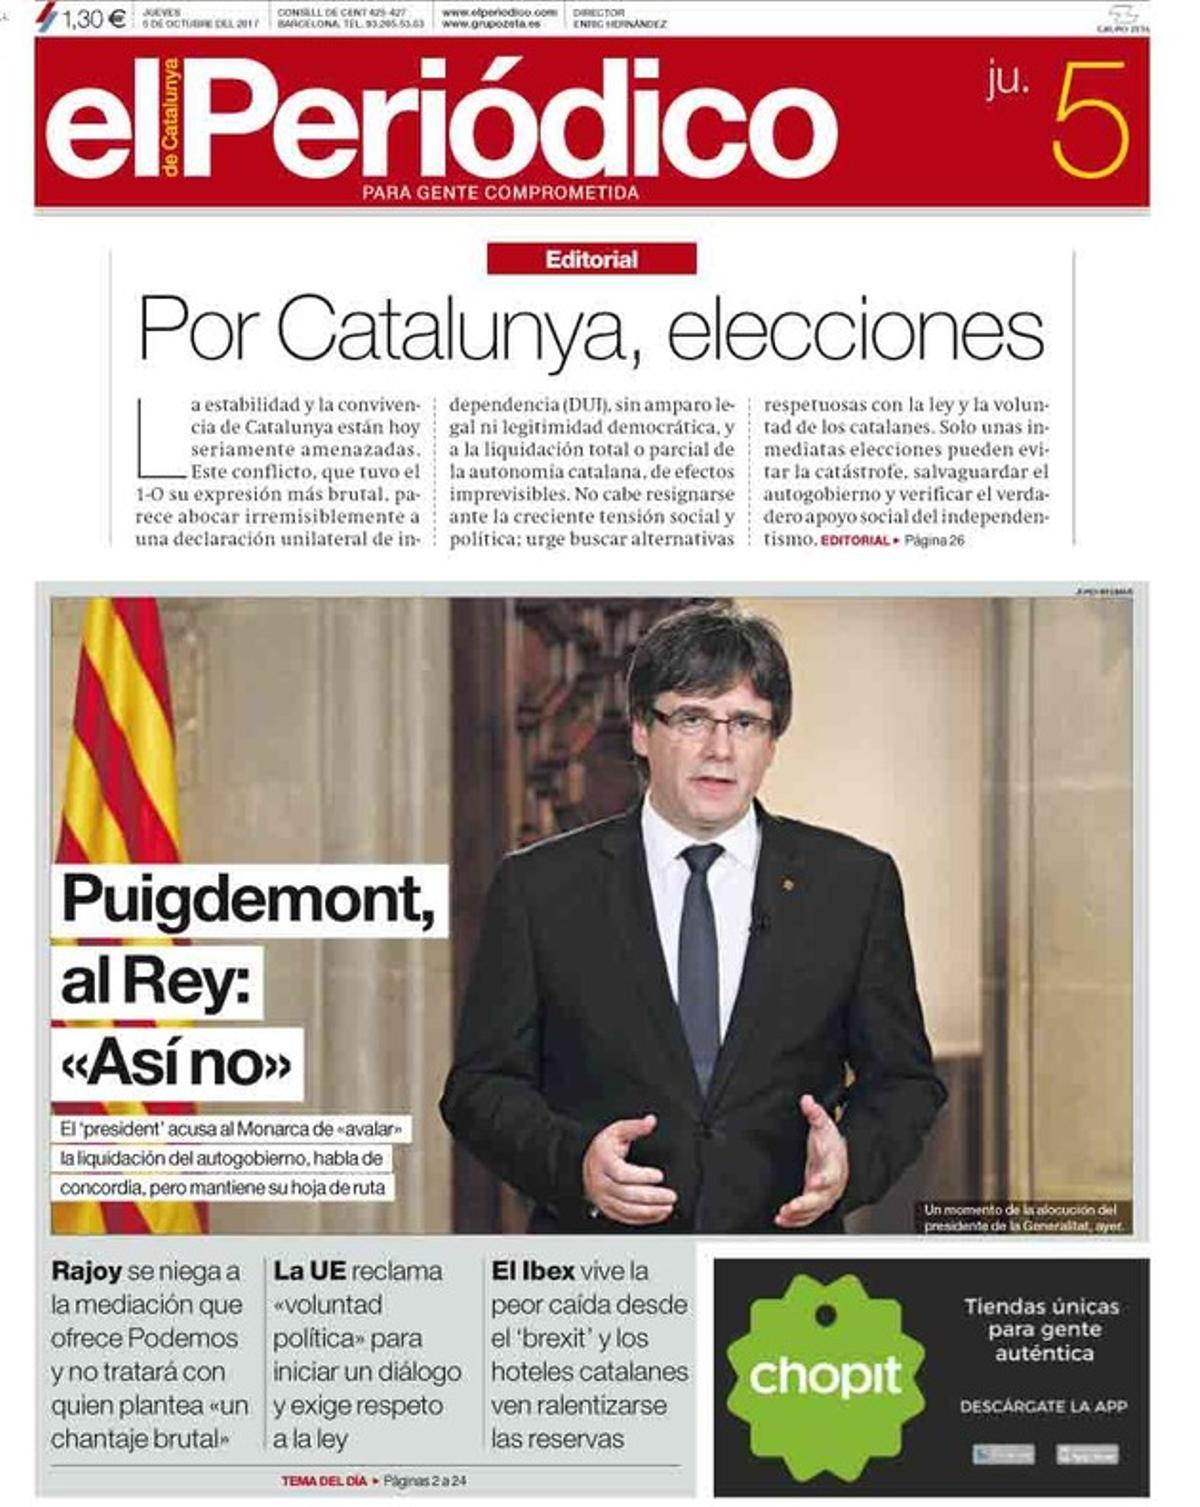 La banca catalana se prepara para salir por miedo a la DUI, según dos diarios de Madrid